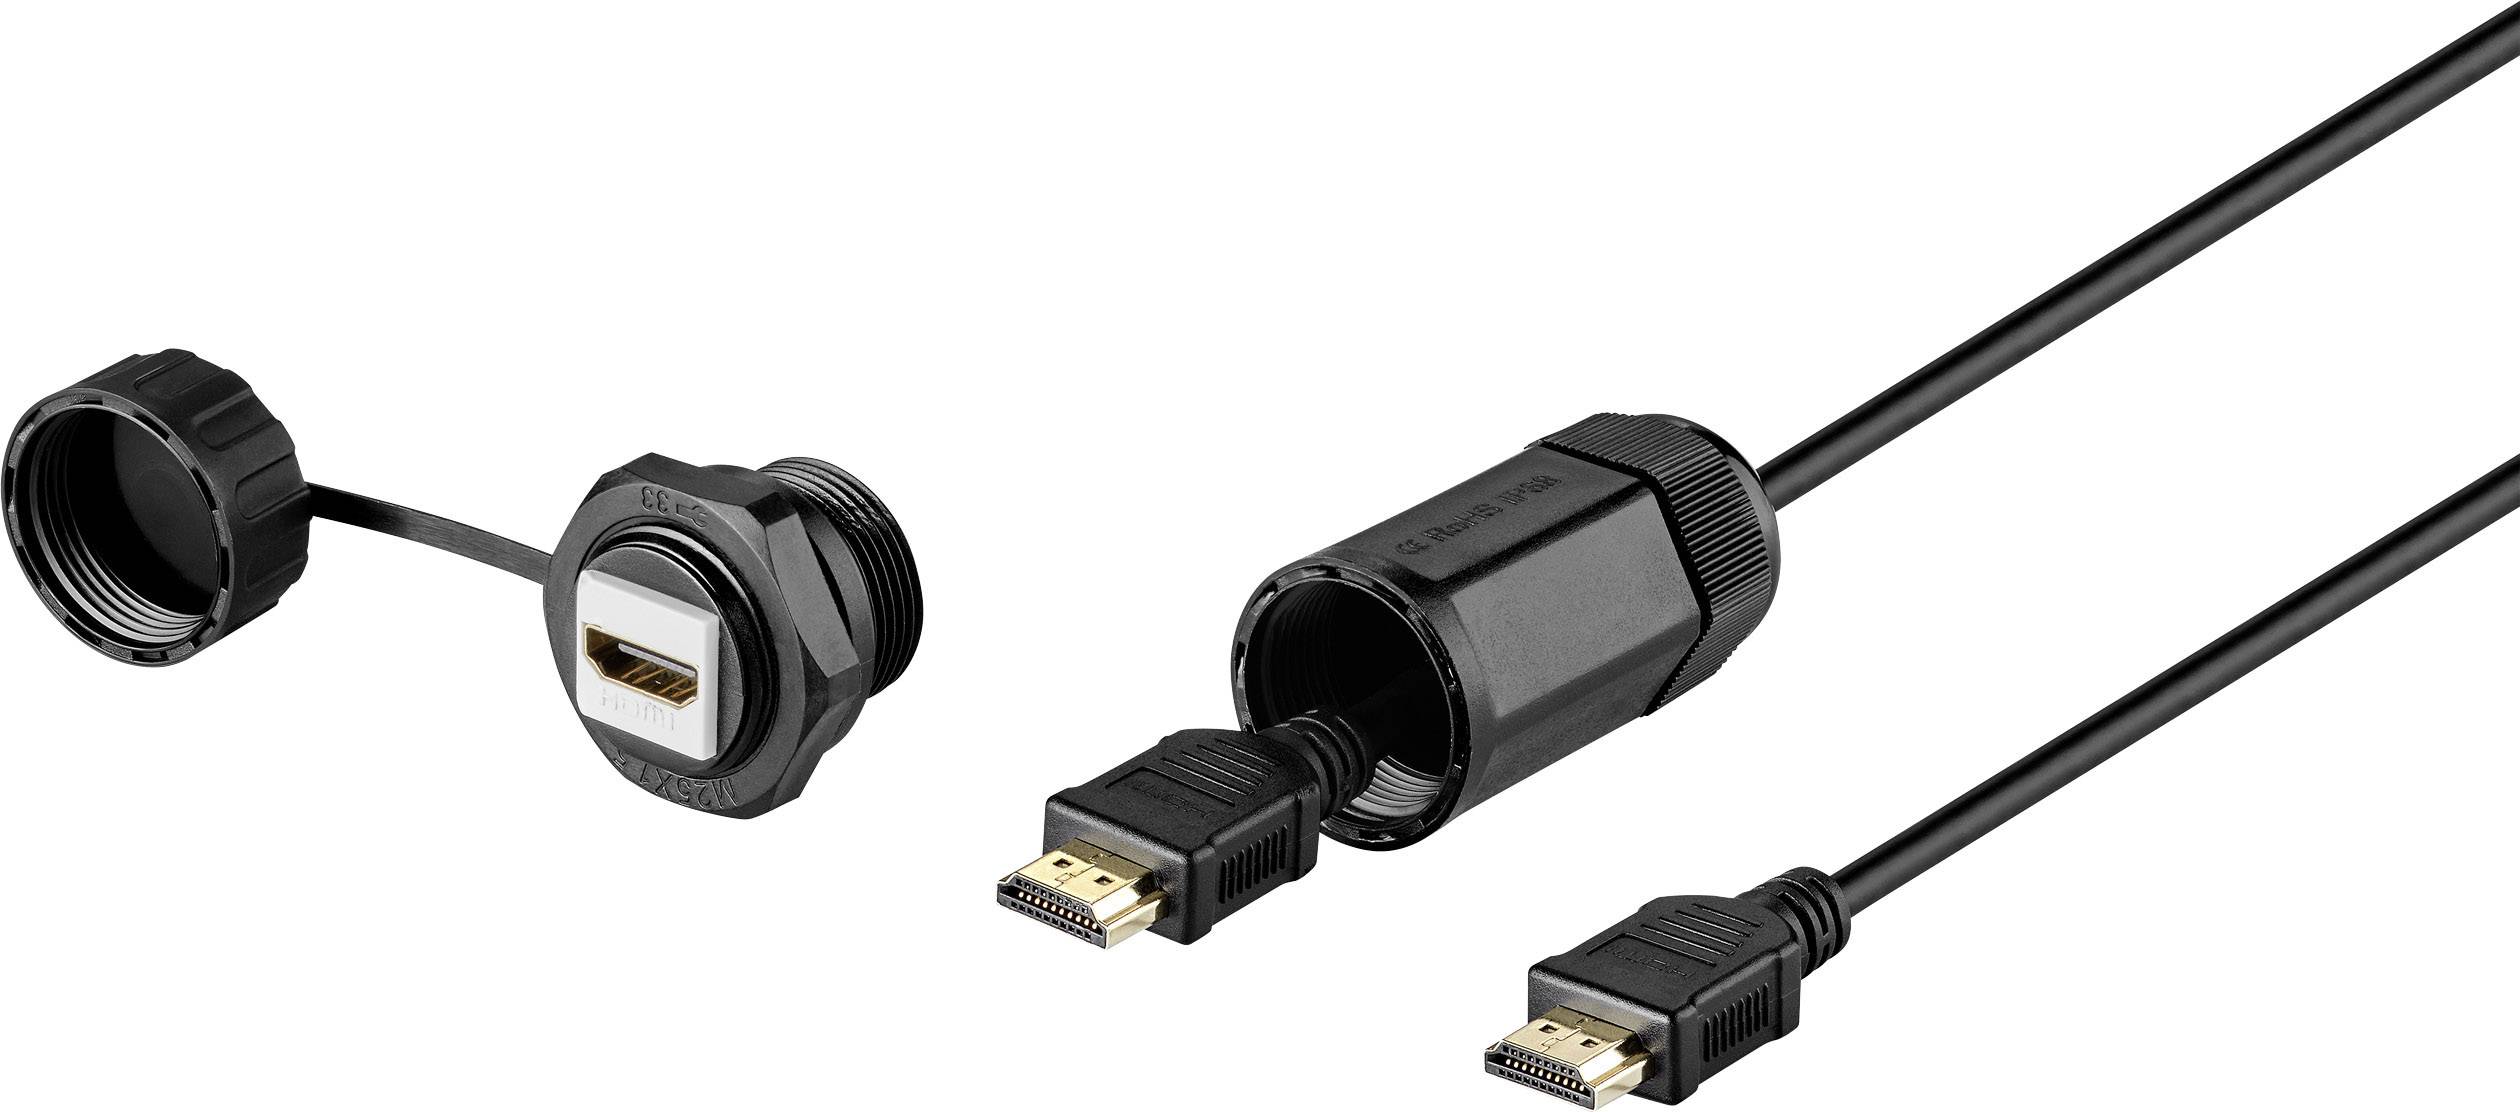 CONRAD Renkforce HDMI Anschlusskabel [1x HDMI-Stecker - 1x HDMI-Buchse] Schwarz Wasserdicht (RF-3770